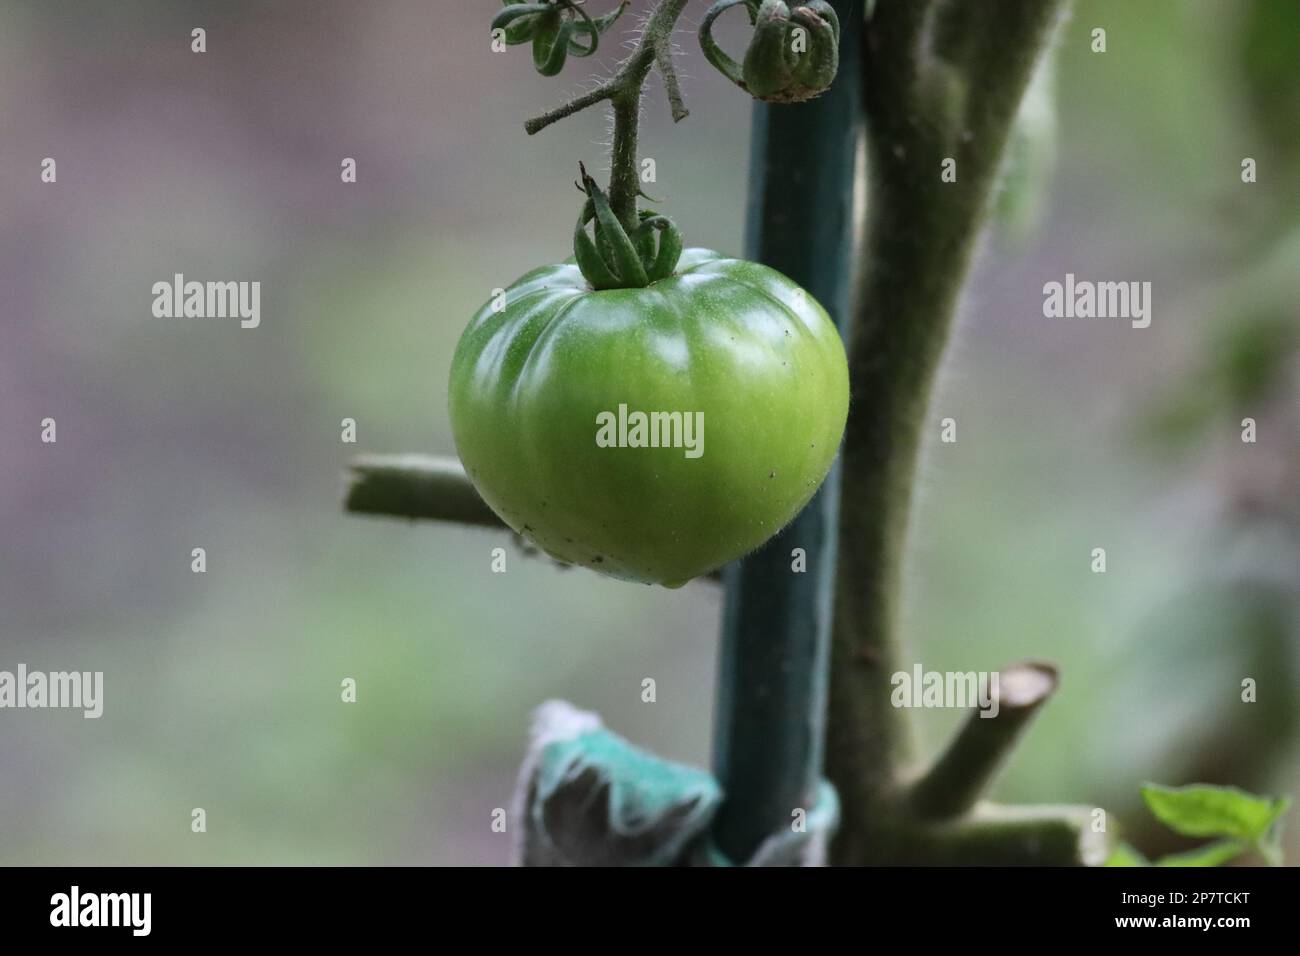 Tomate inmaduro de color verde, pendiendo de la planta que lo alimenta, en huerto rural. Stock Photo